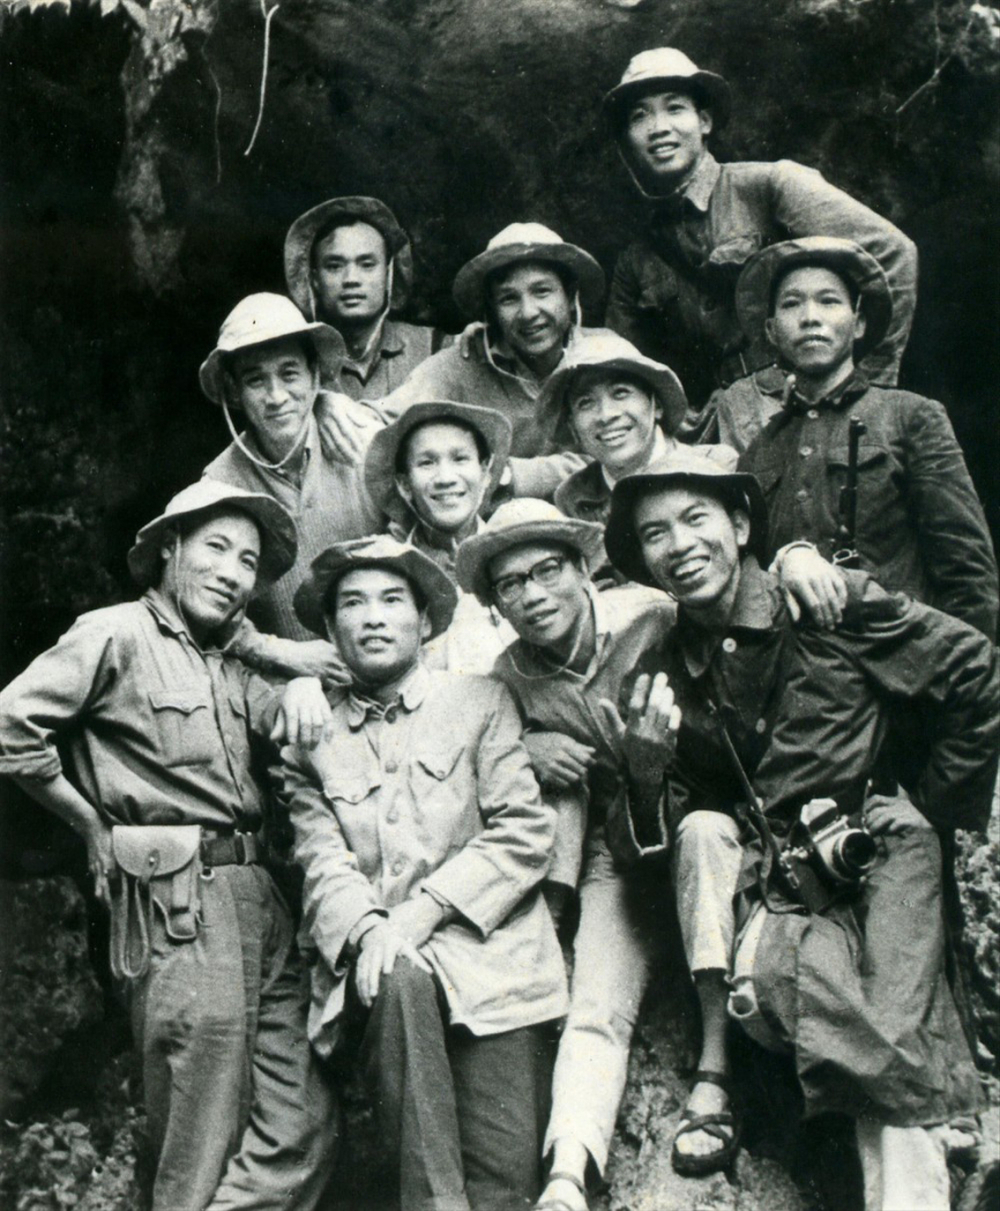 Nhà văn Trình Quang Phú (bìa phải, đeo máy ảnh) cùng nhóm cán bộ Báo Tiền Phong chuẩn bị vào chiến trường năm 1968 - ẢNH: NHÂN VẬT CUNG CẤP